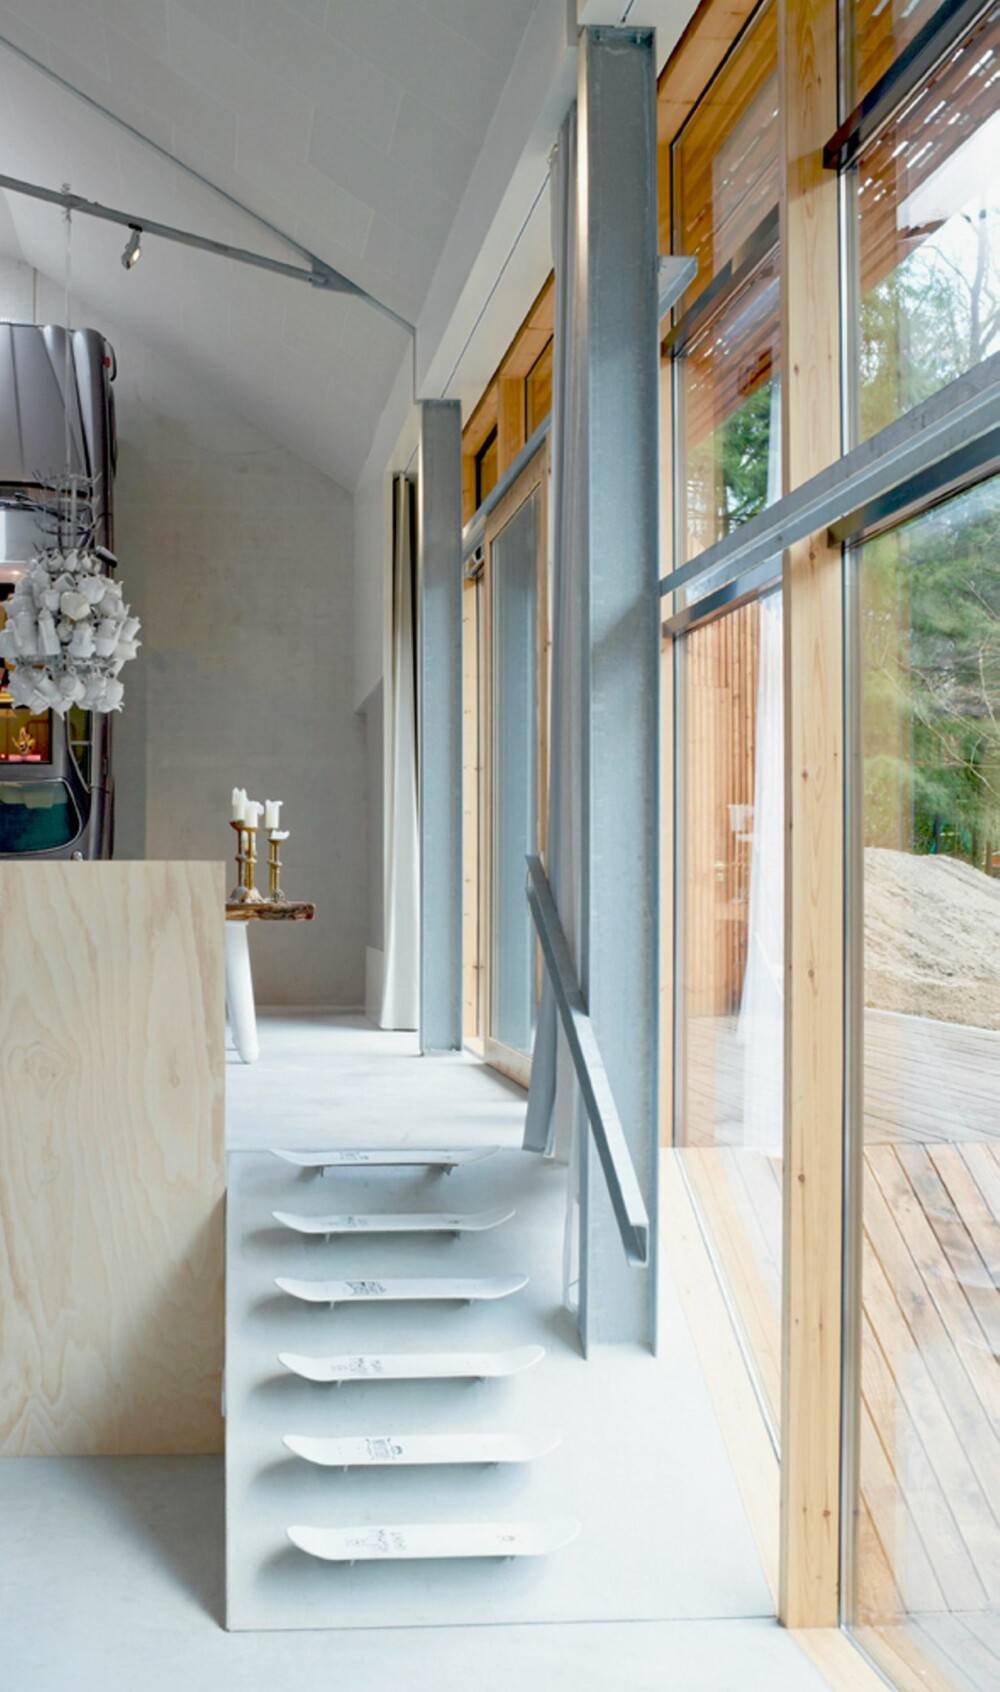 ARTIGE OVERRASKELSER: Huset er fullt av finurlige løsninger slik som disse trappetrinnene formet som skateboard.